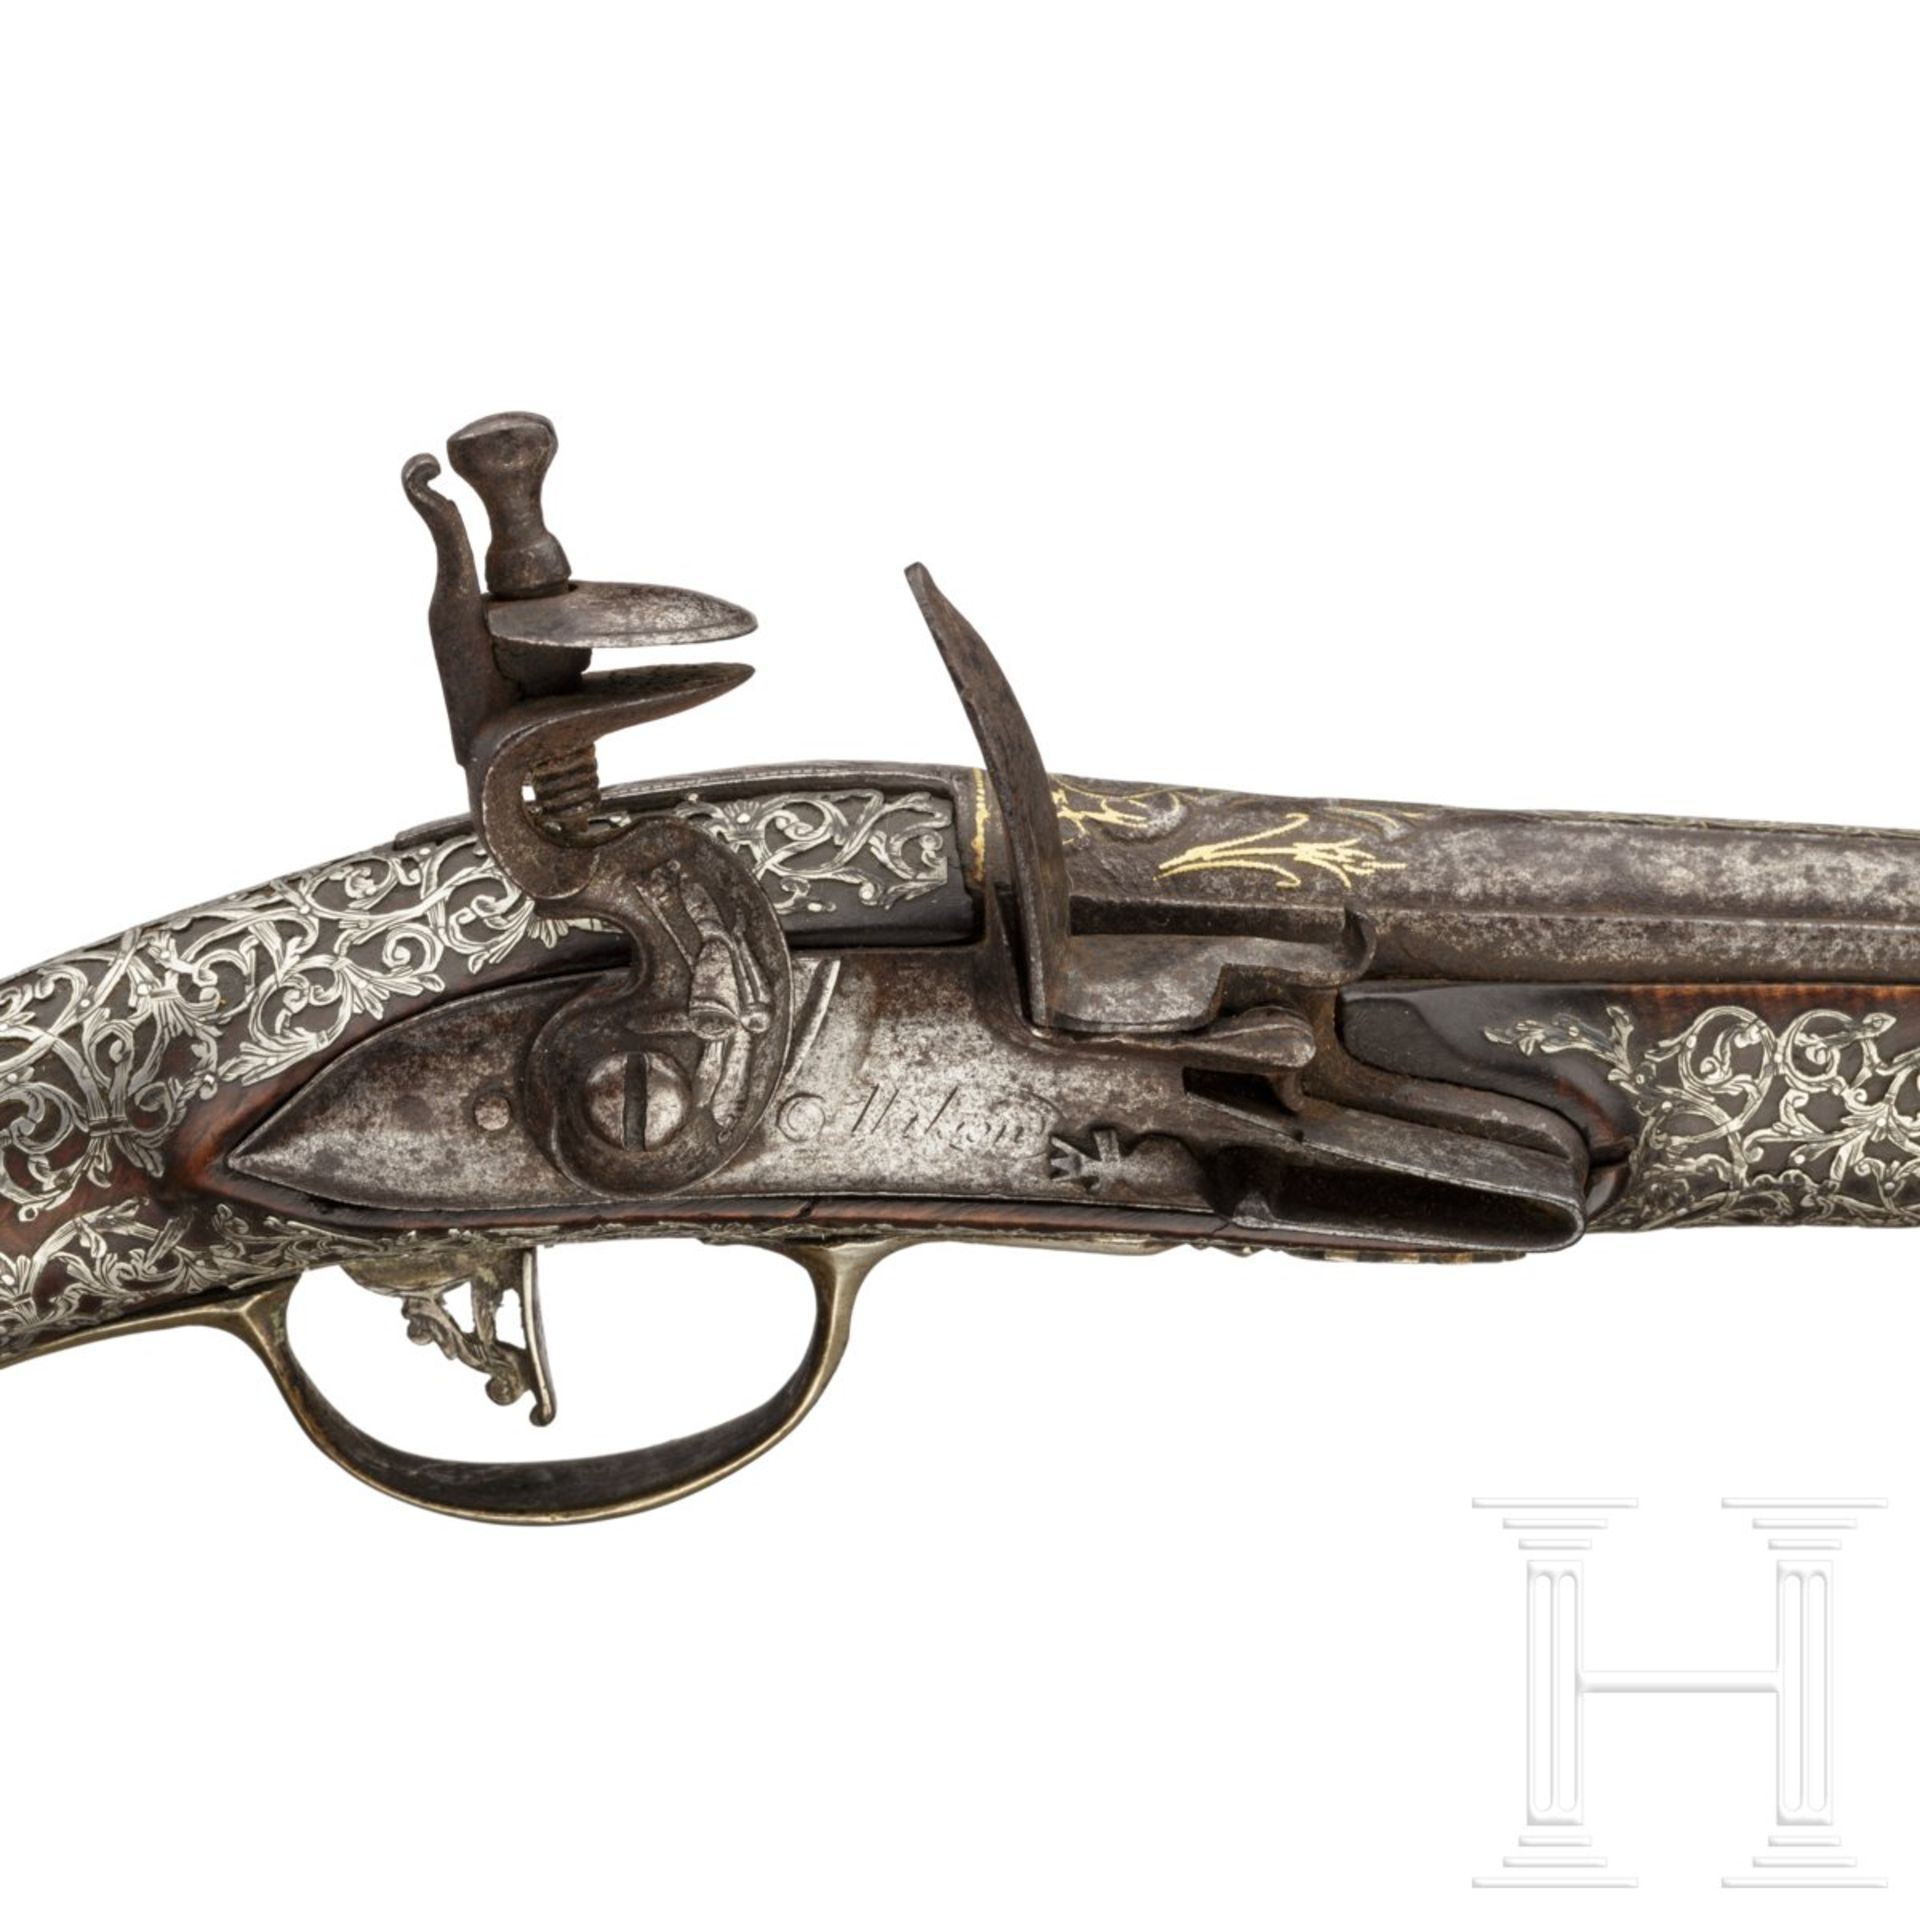 Silbermontierte Steinschlosspistole, osmanisch, 18. Jhdt.Glatter Lauf im Kaliber 14 mm, im - Bild 5 aus 6